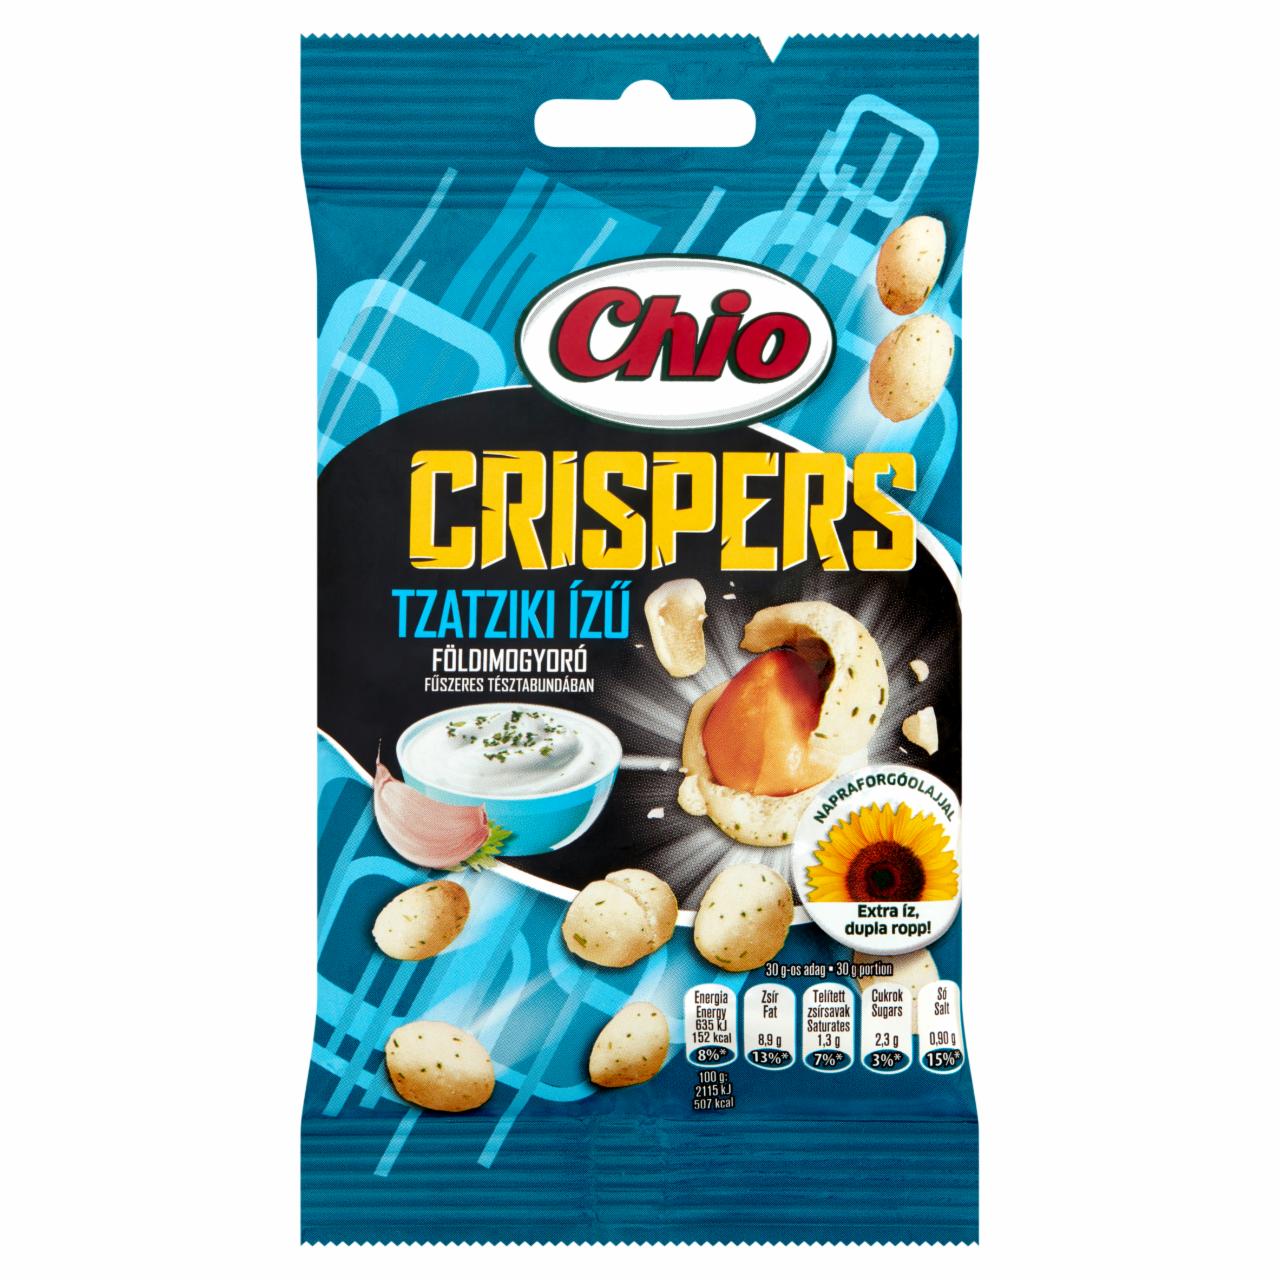 Képek - Chio Crispers földimogyoró tzatziki ízű fűszeres tésztabundában 60 g